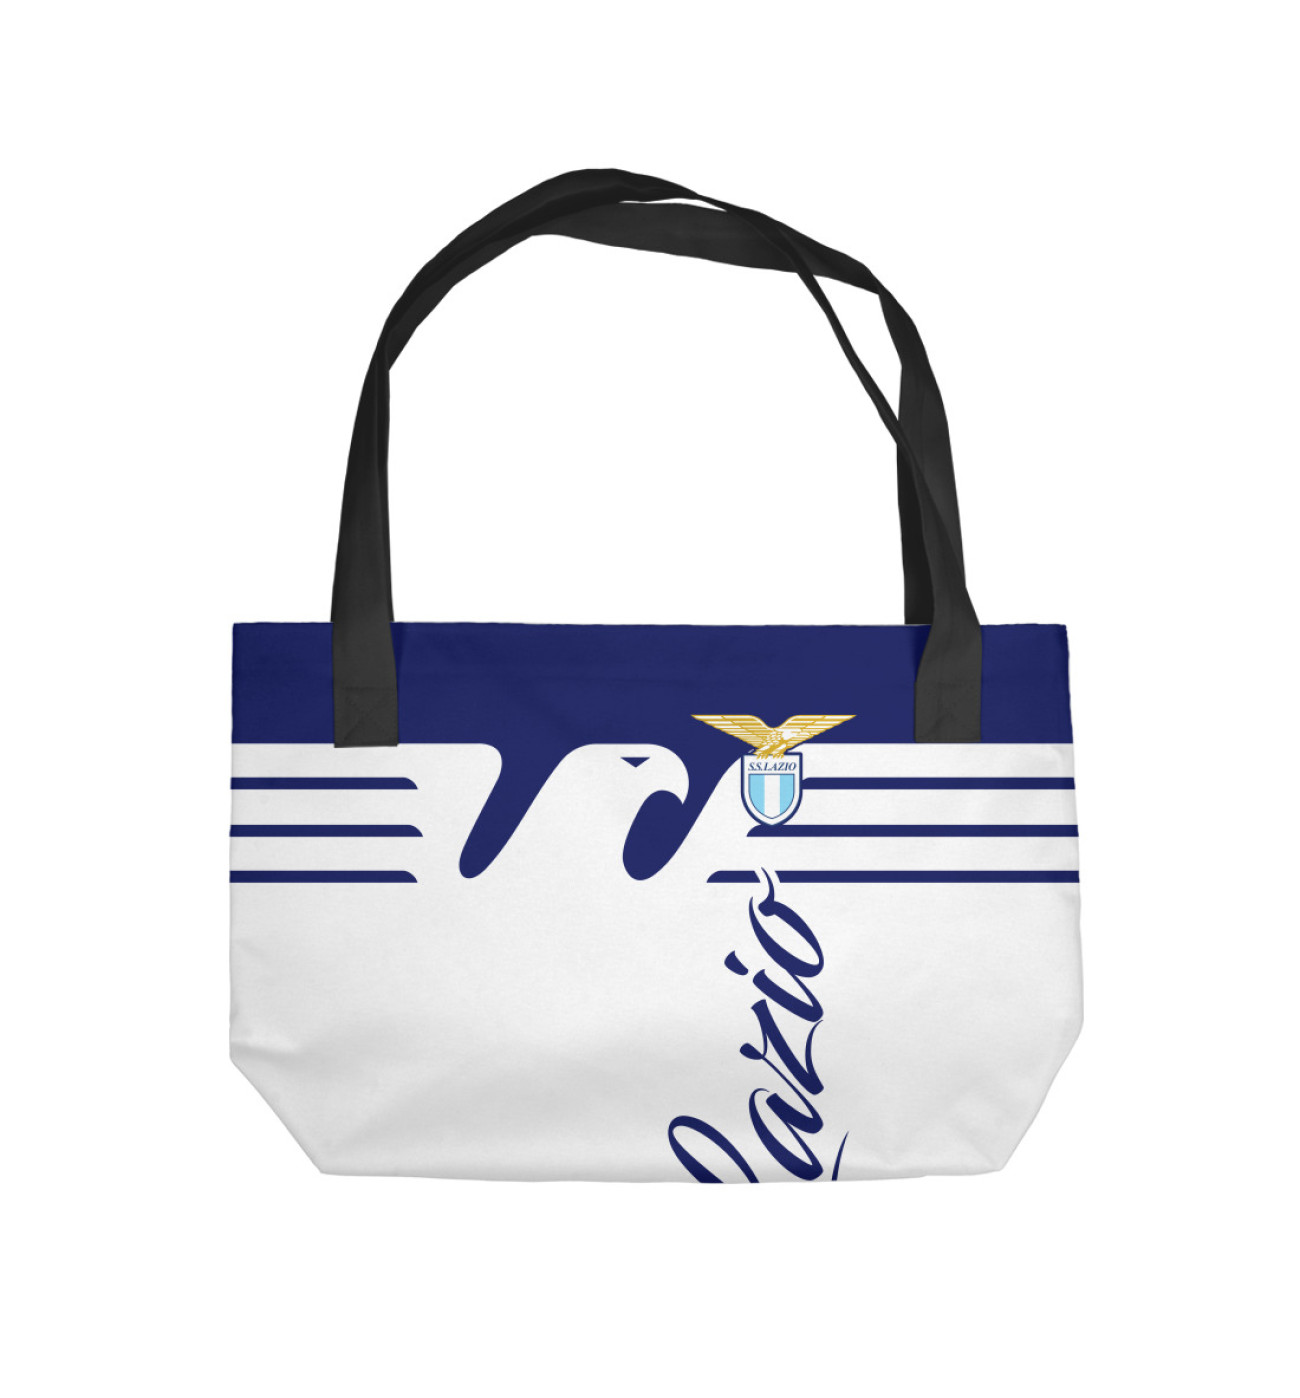  Пляжная сумка Лацио, артикул: FTO-837257-sup